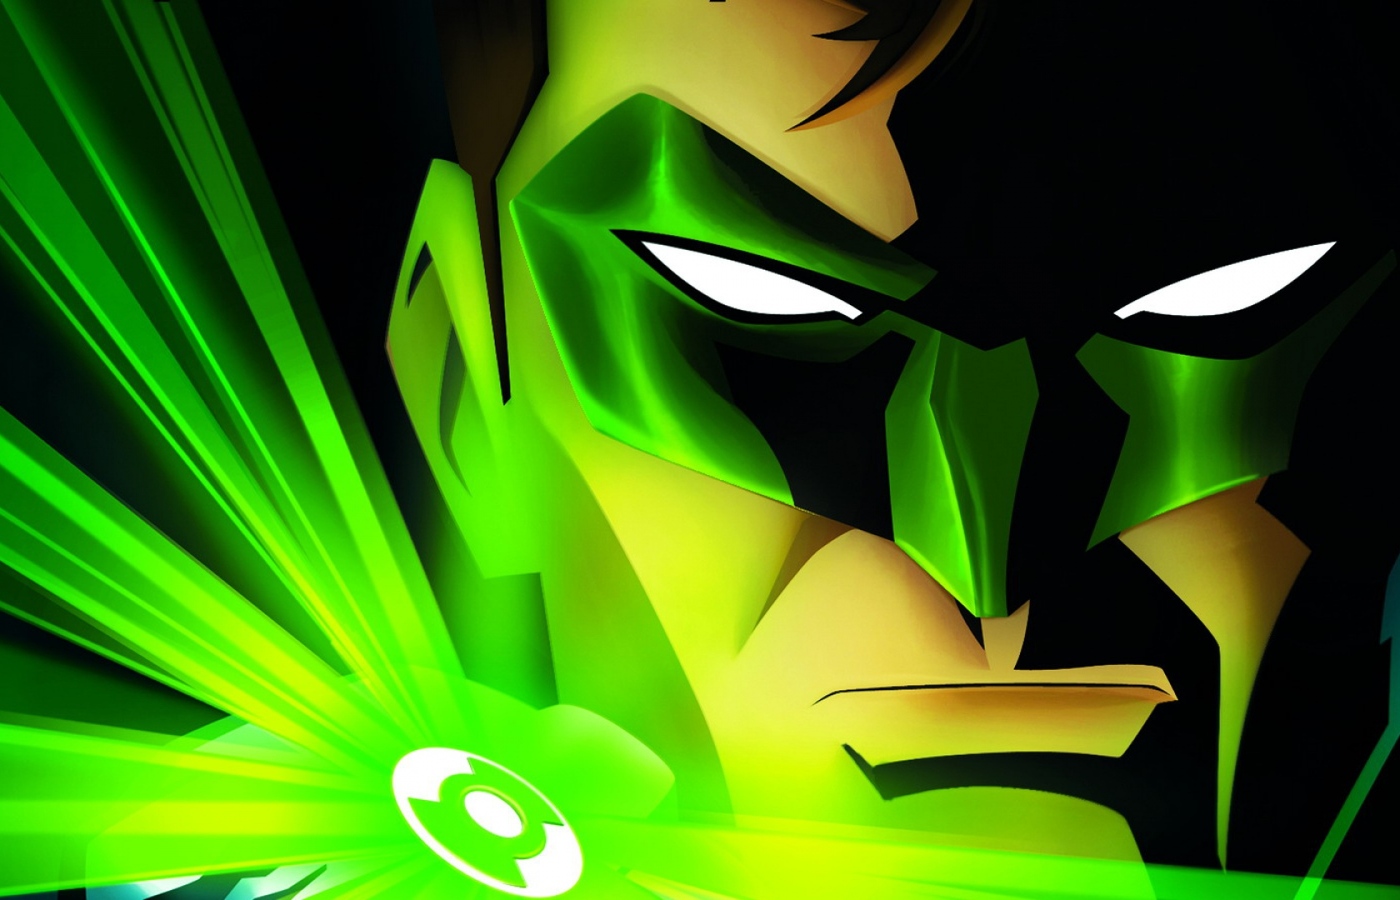 green-lantern-dc-comics-wide.jpg